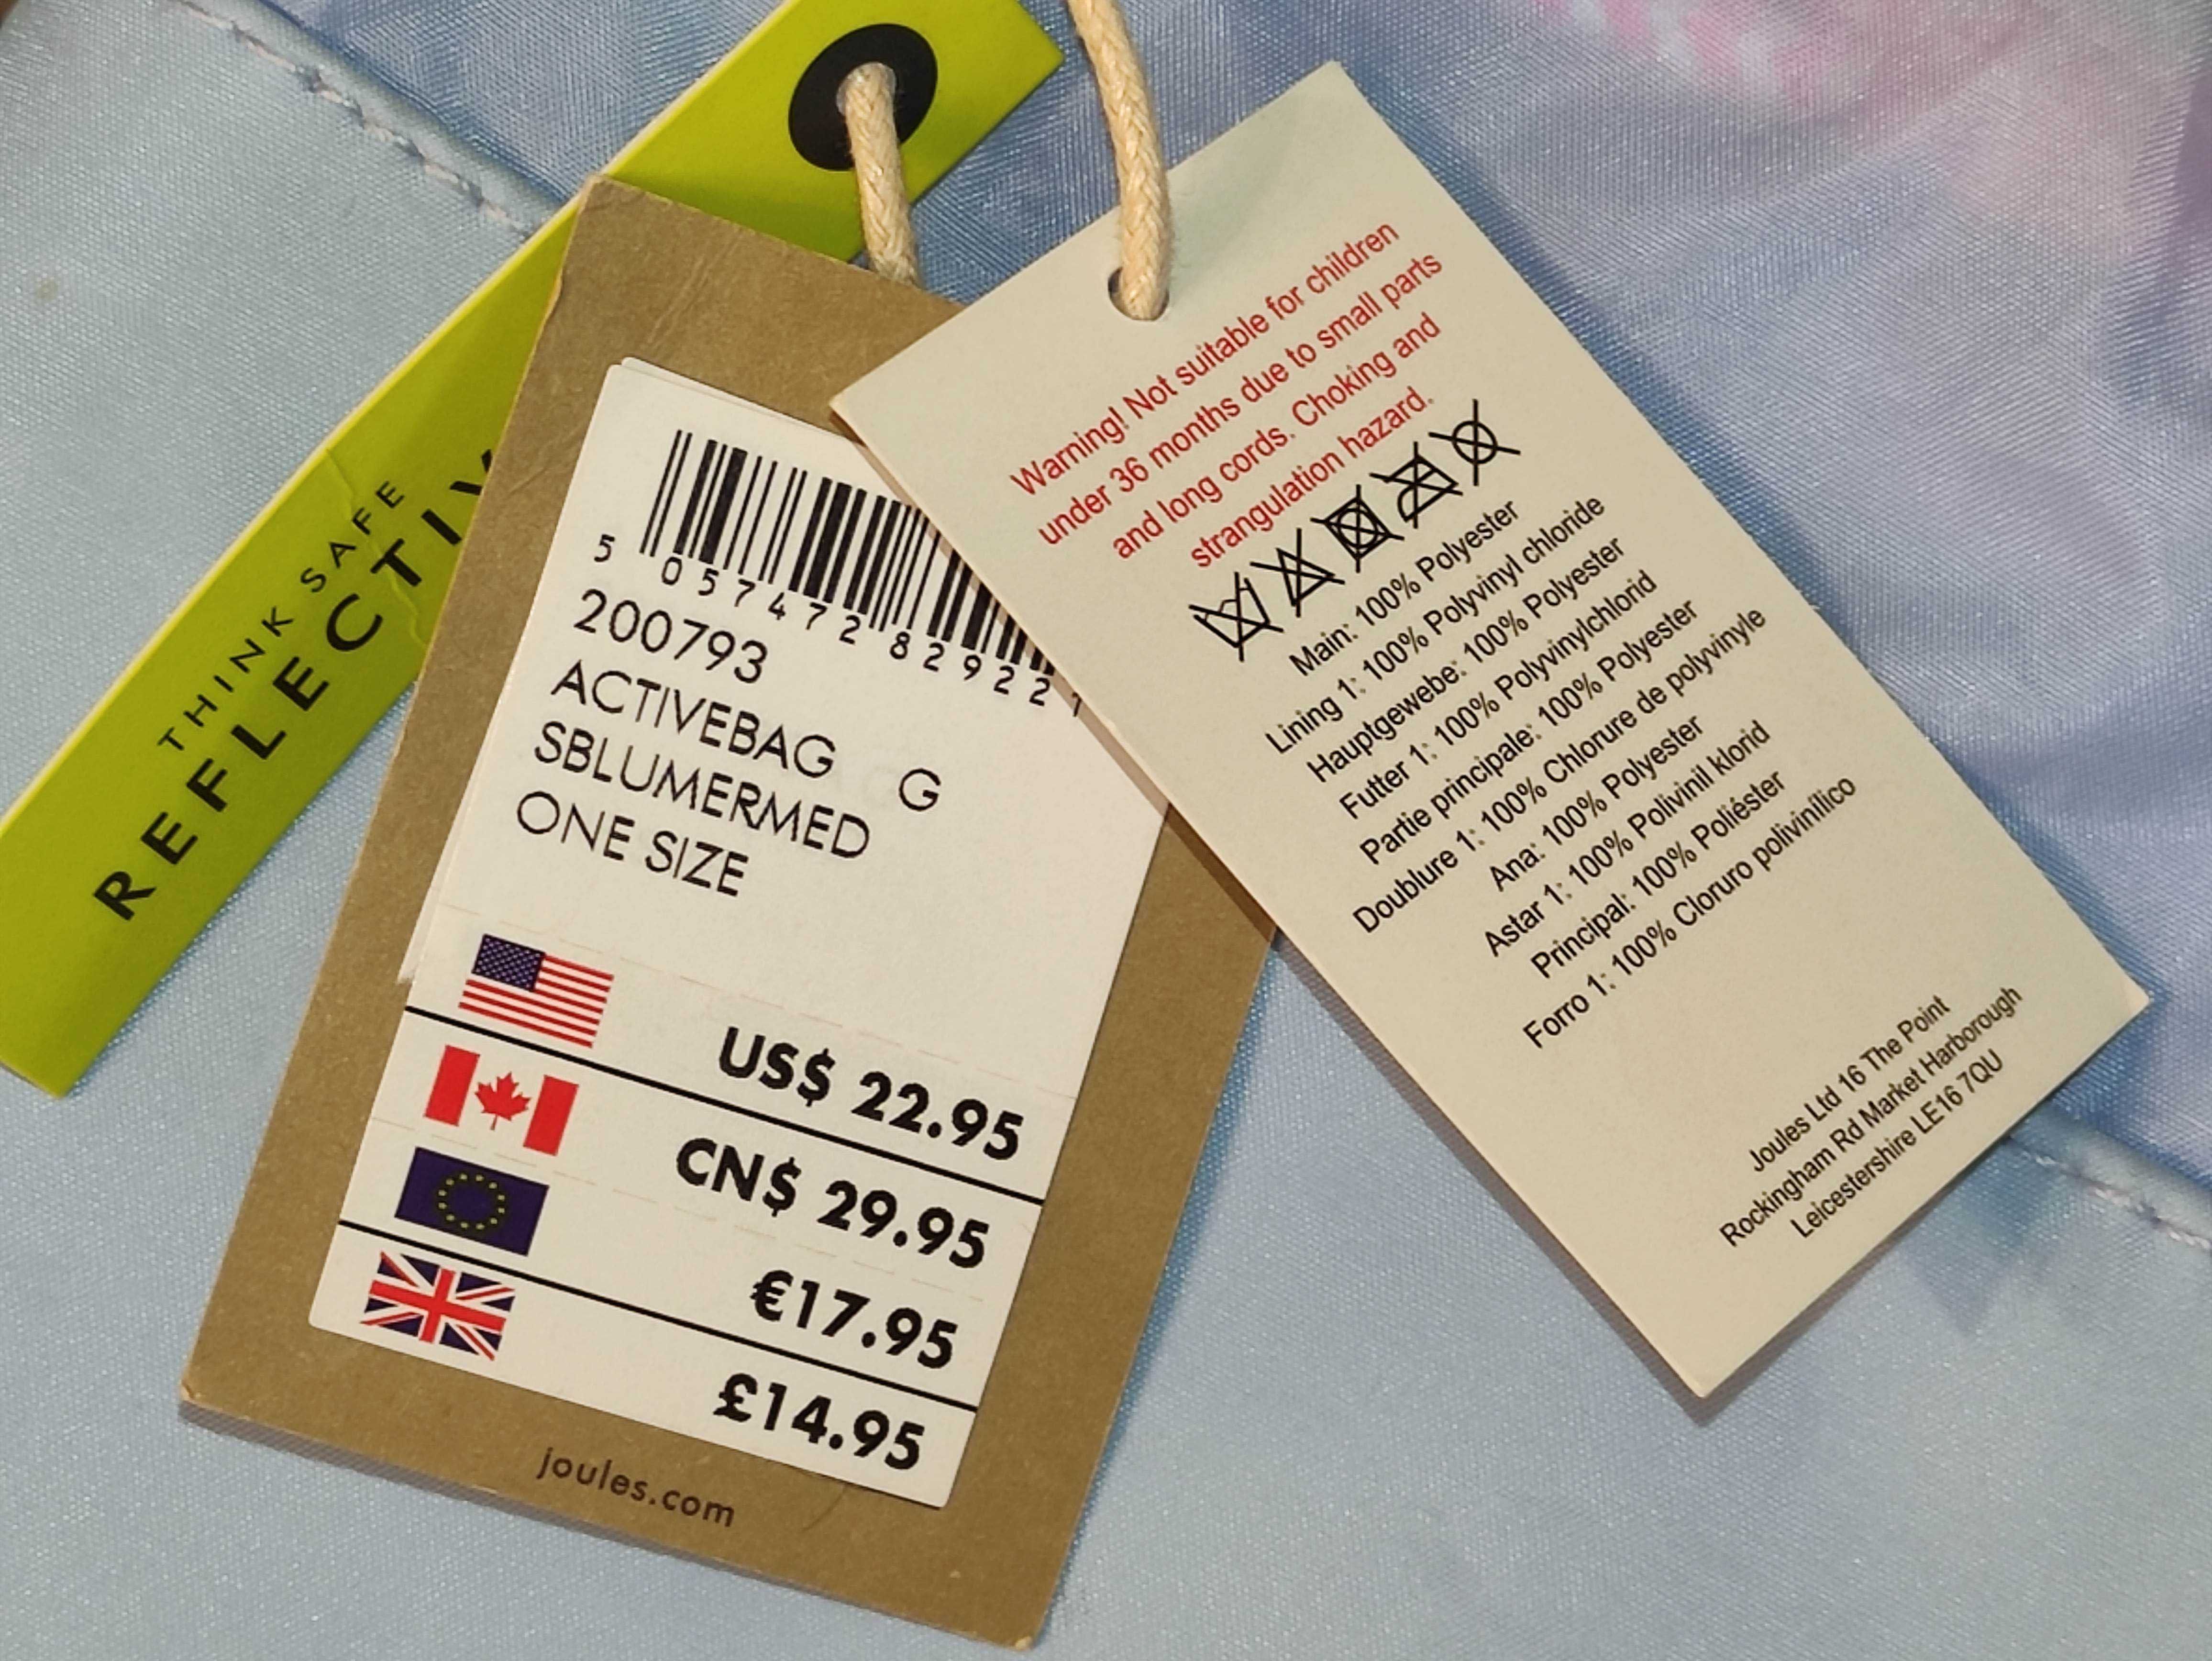 Сумка - рюкзак "Русалка" для дівчат фірми JOULES Great Britain